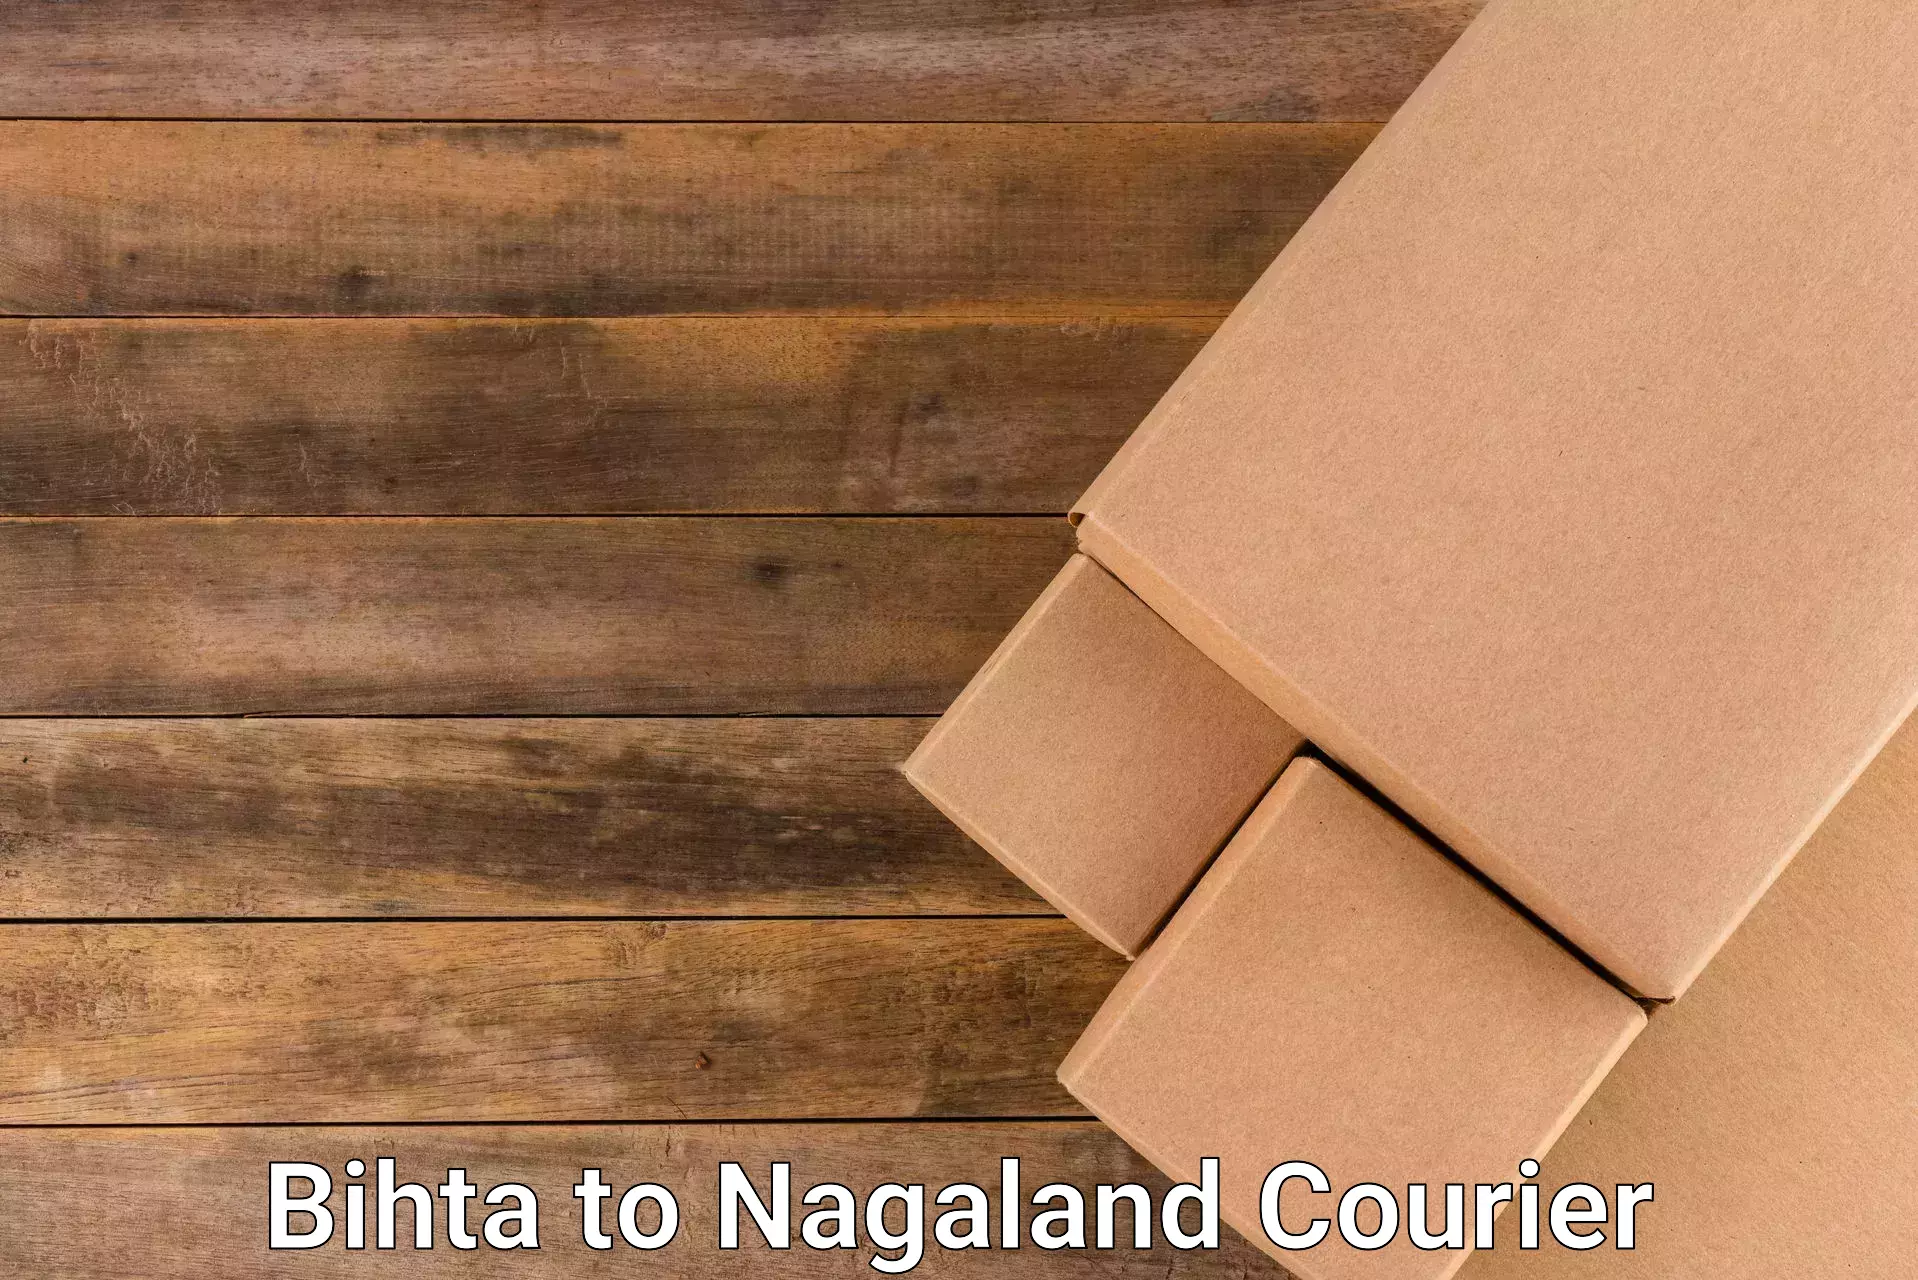 Shipping and handling Bihta to NIT Nagaland